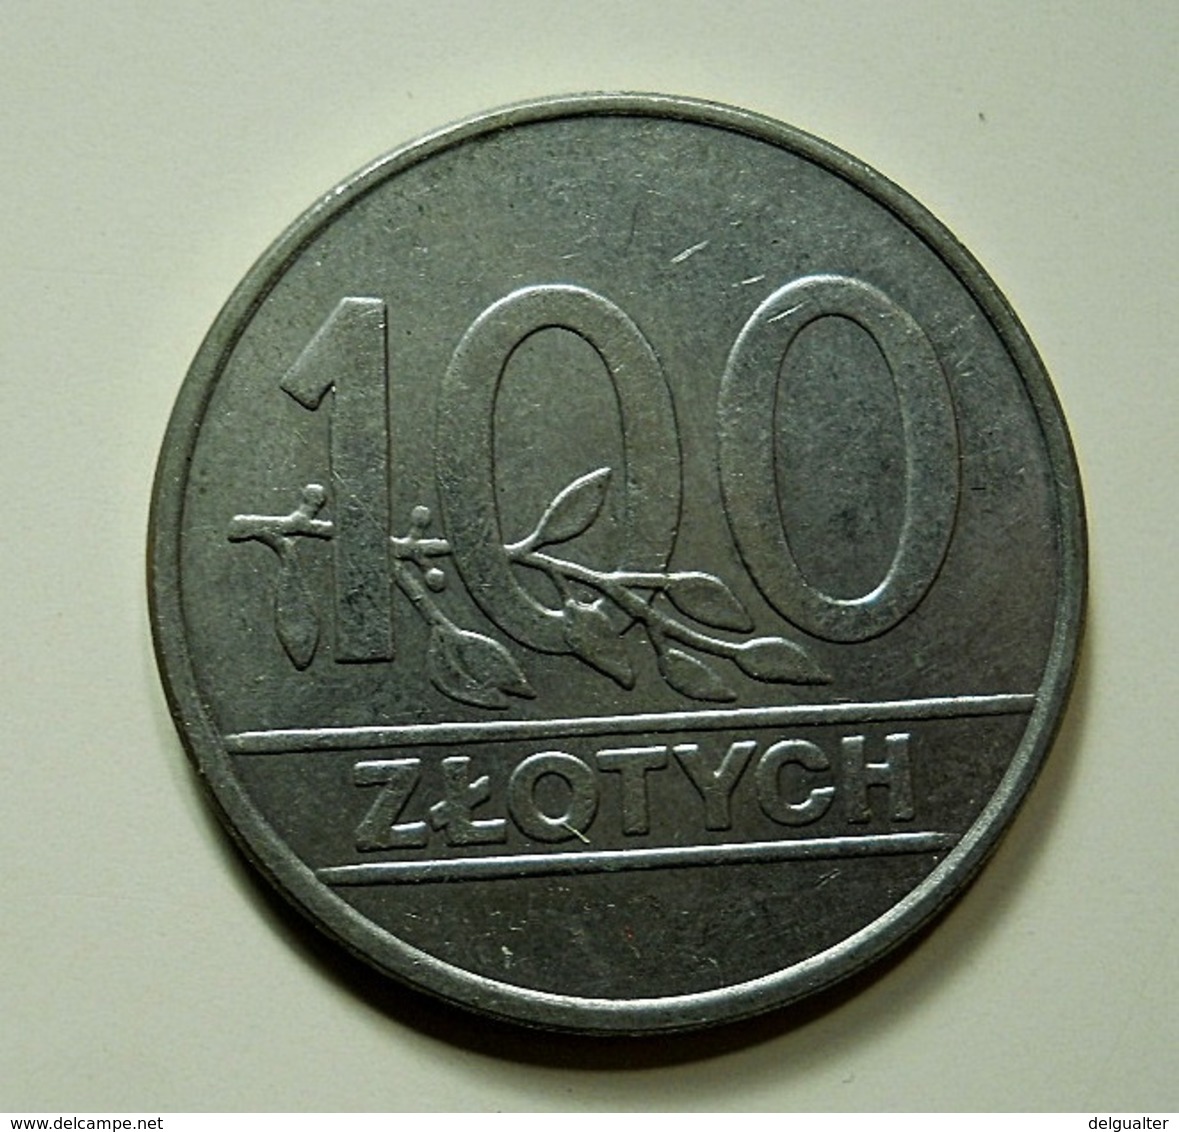 Poland 100 Zlotych 1990 - Pologne